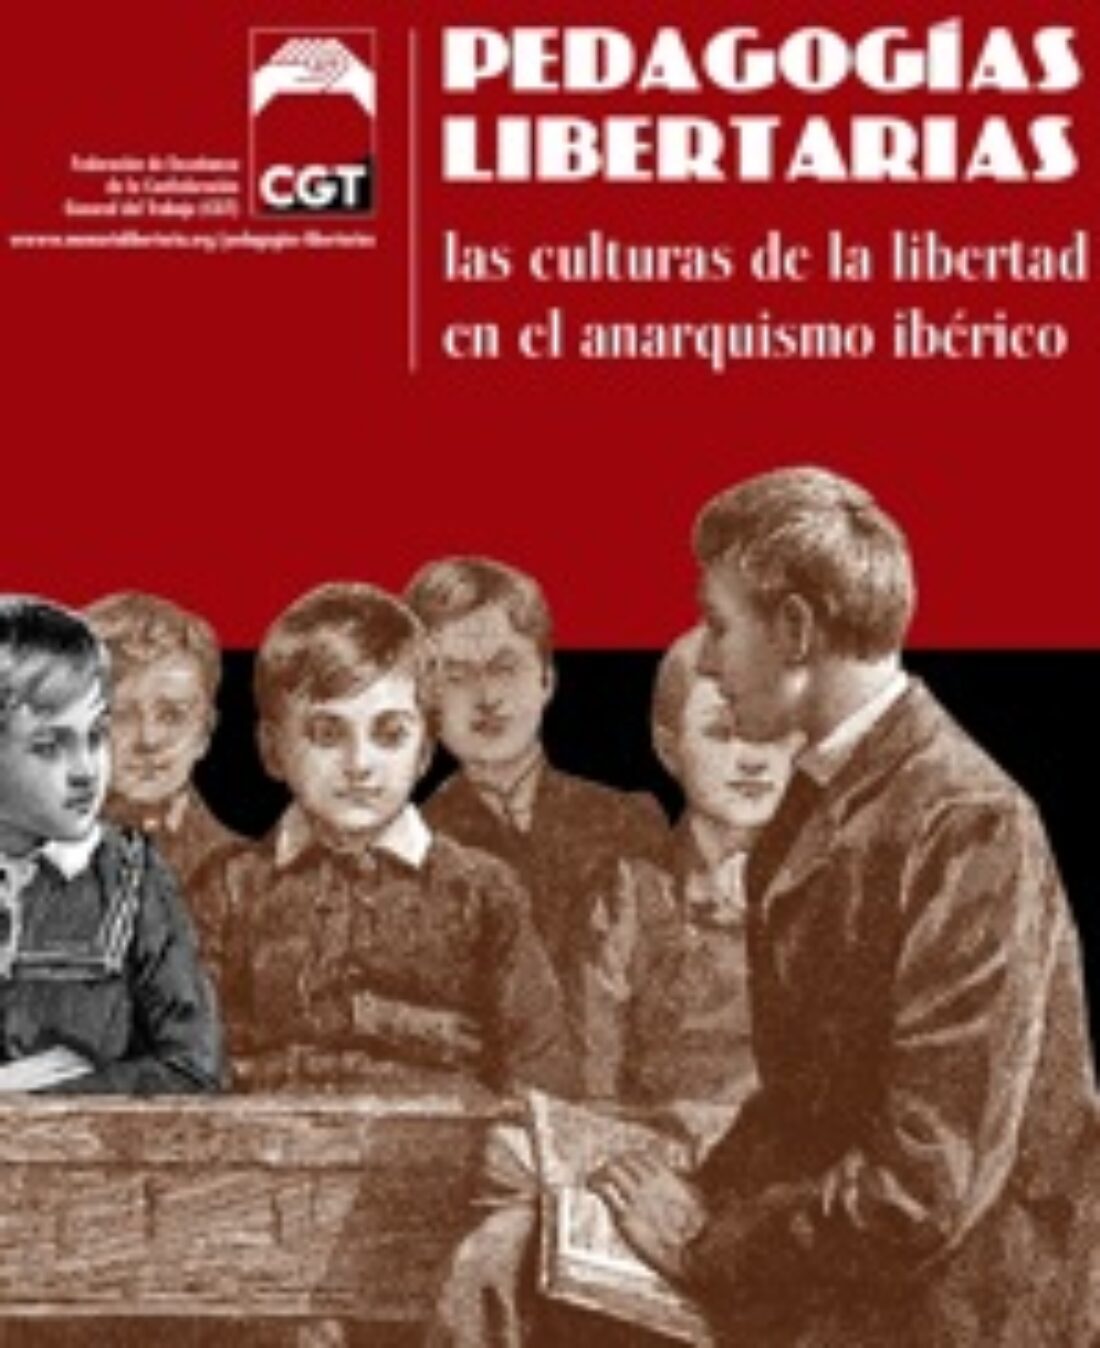 11 al 22 nov, Jaén : Exposición Pedagogías Libertarias